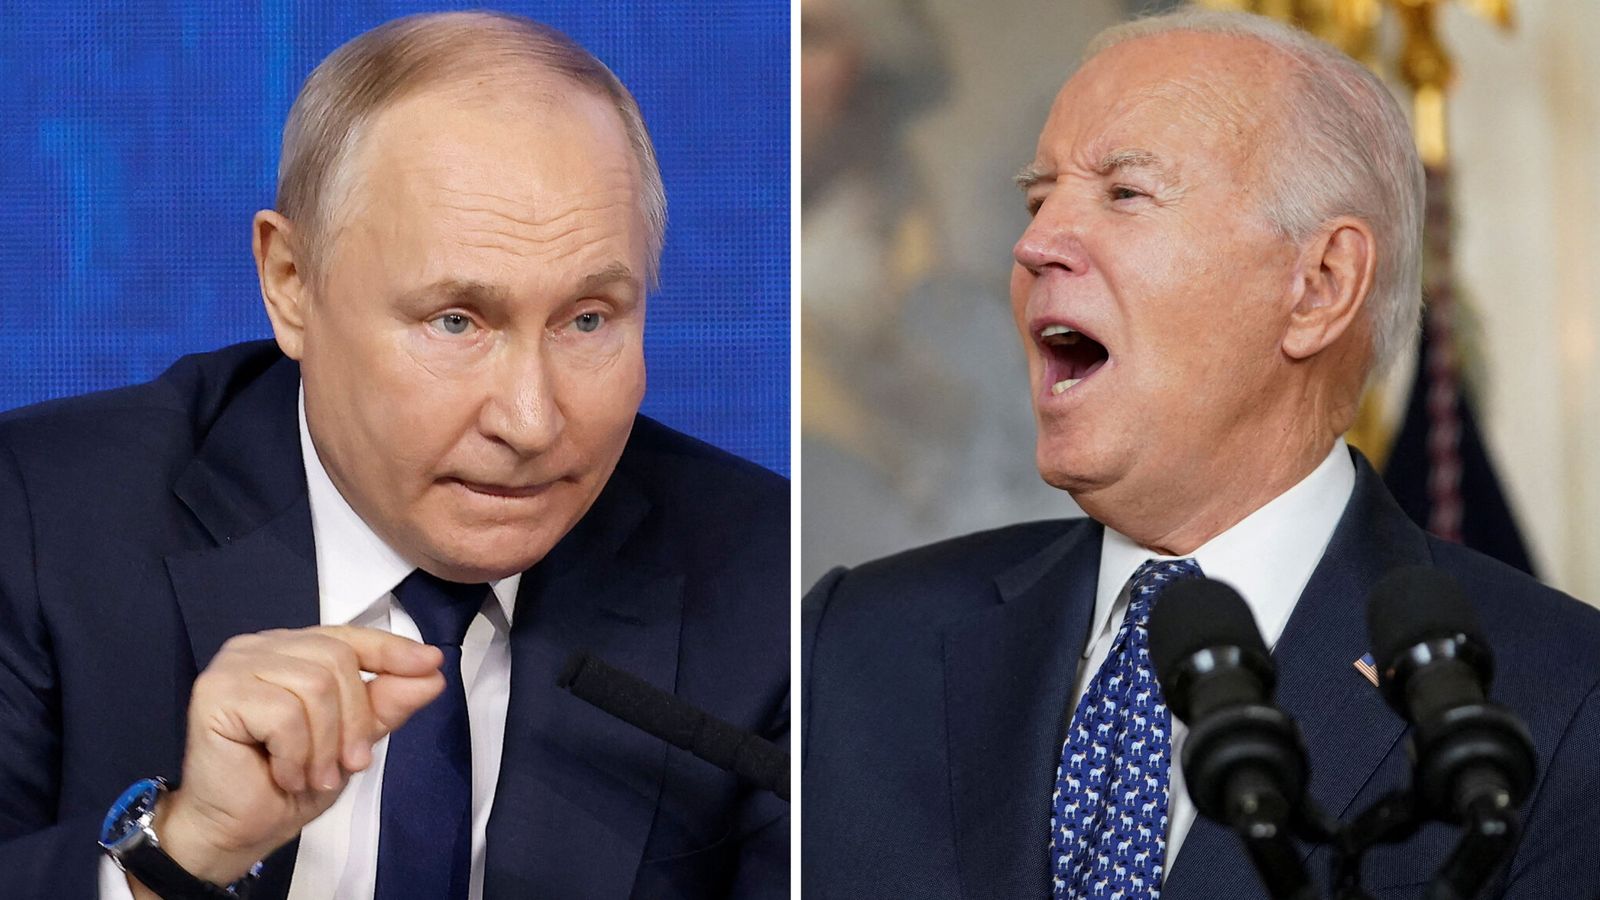 Putin, Biden'ın ağır hakaret içeren sözlerine cevap verdi: "Haklı olduğumu gösterdi"